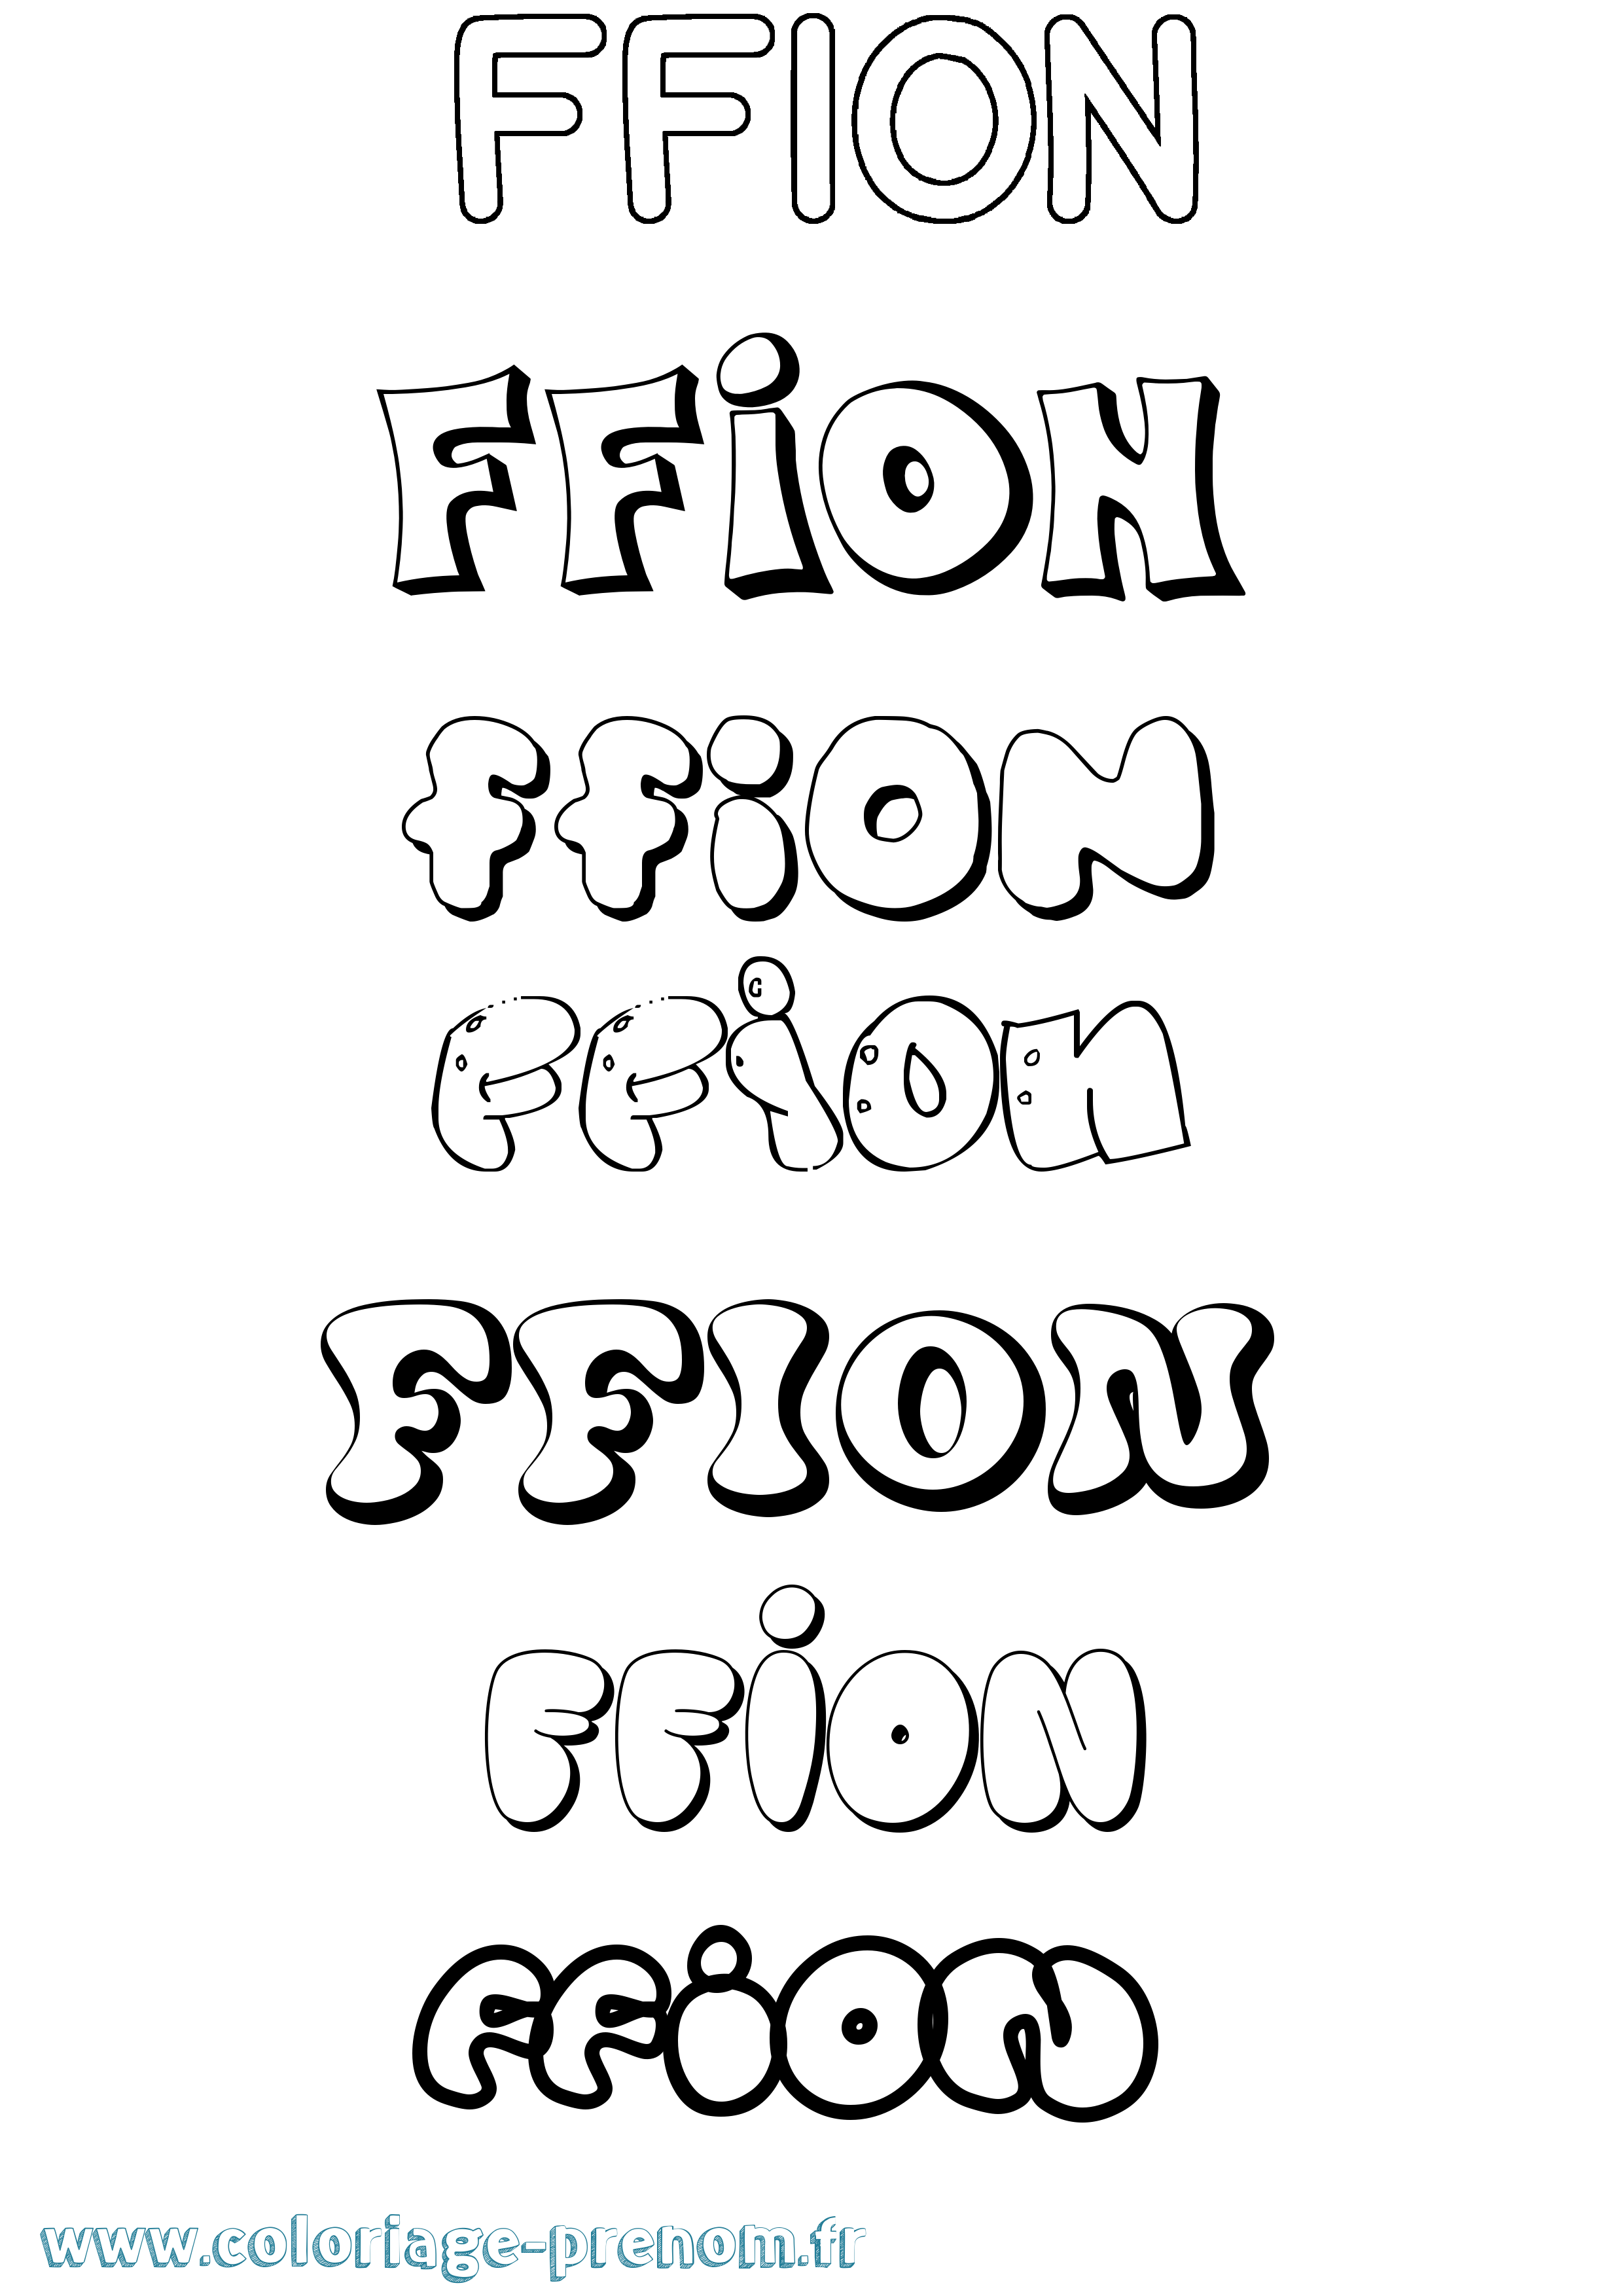 Coloriage prénom Ffion Bubble